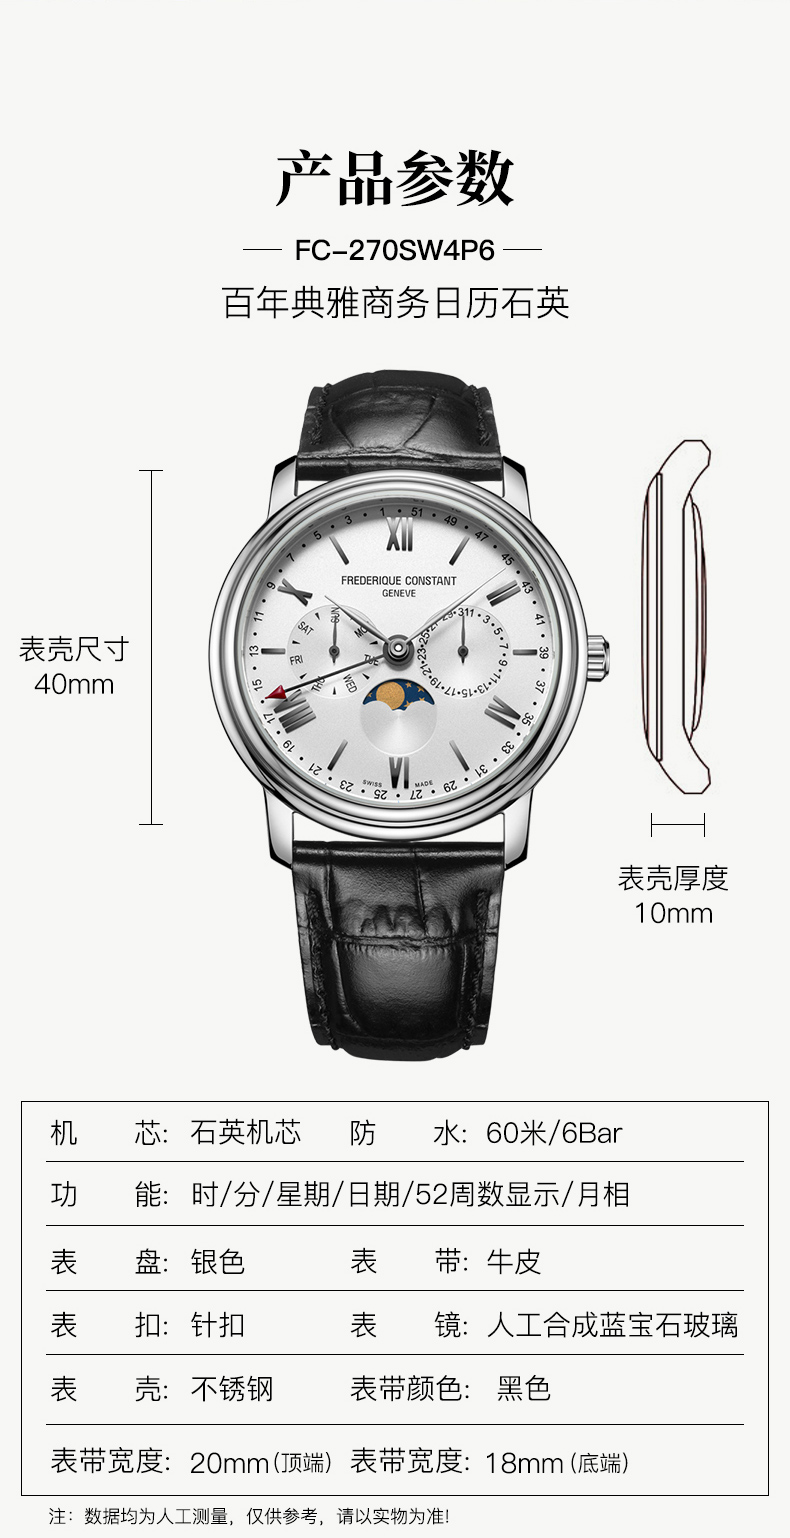 3、请问FREDER丨QUE cONSTANT GENEVE，品牌手表是多少，价格是多少。